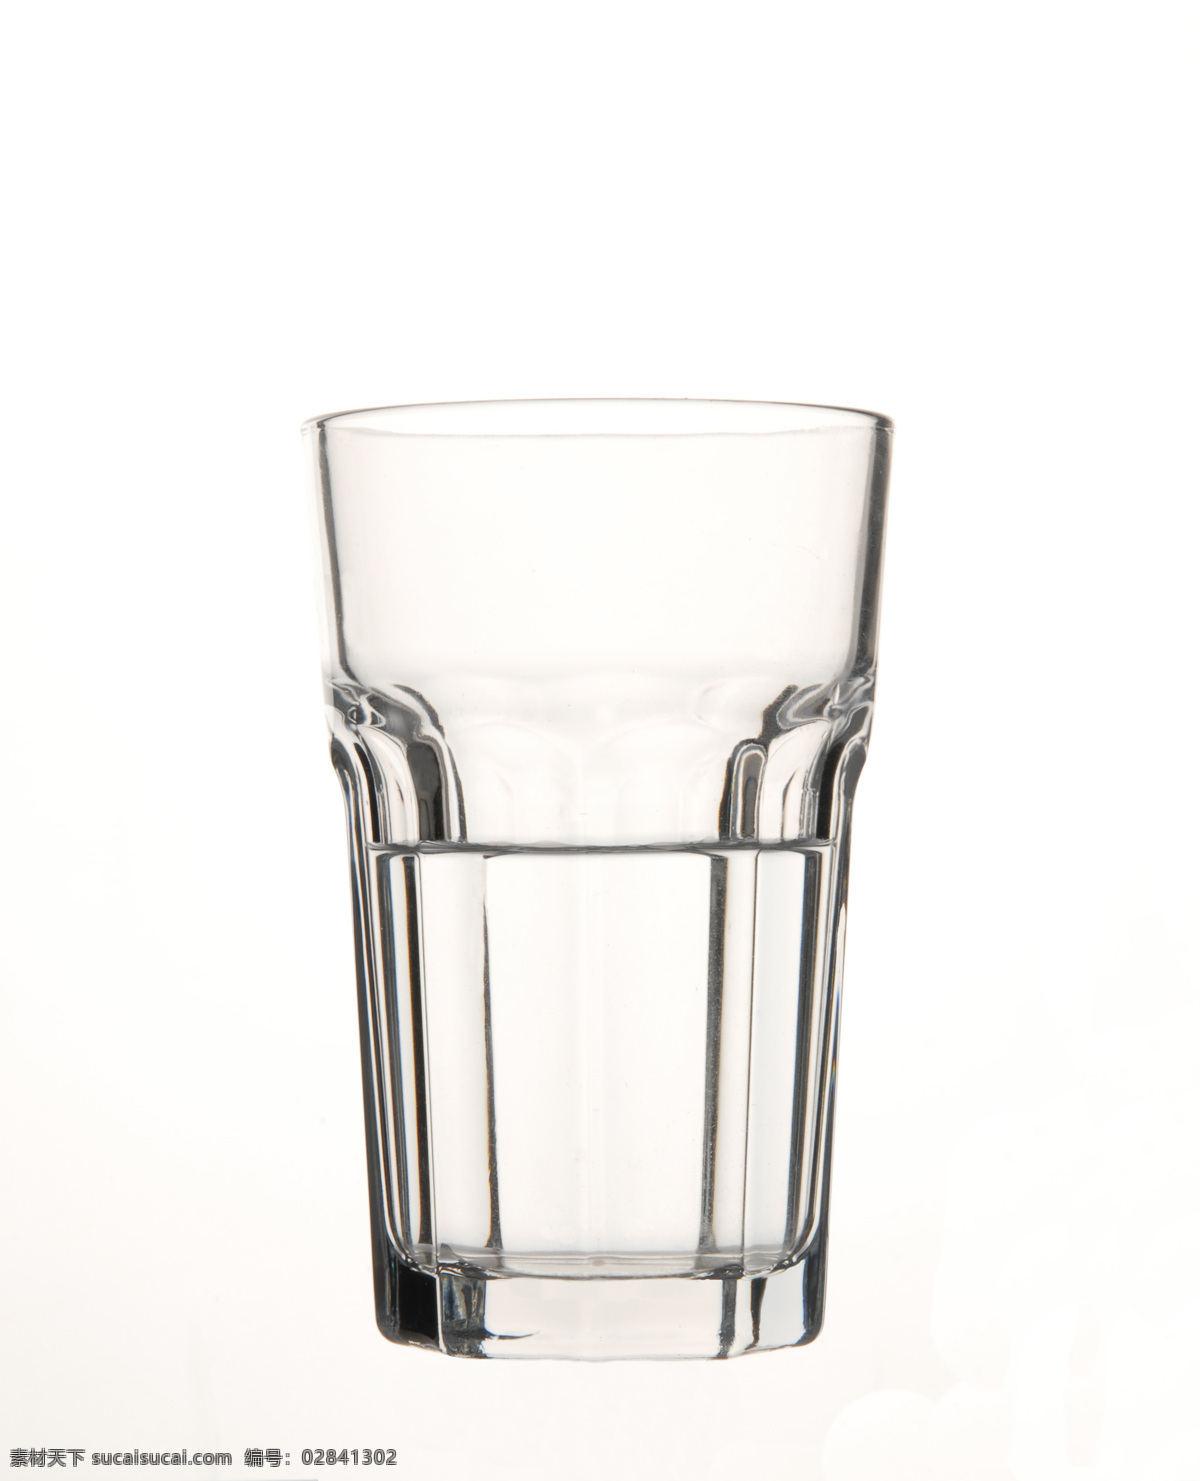 透明玻璃水杯 透明玻璃杯 商业摄影 静物 冰块 宜家玻璃杯 餐具厨具 餐饮美食